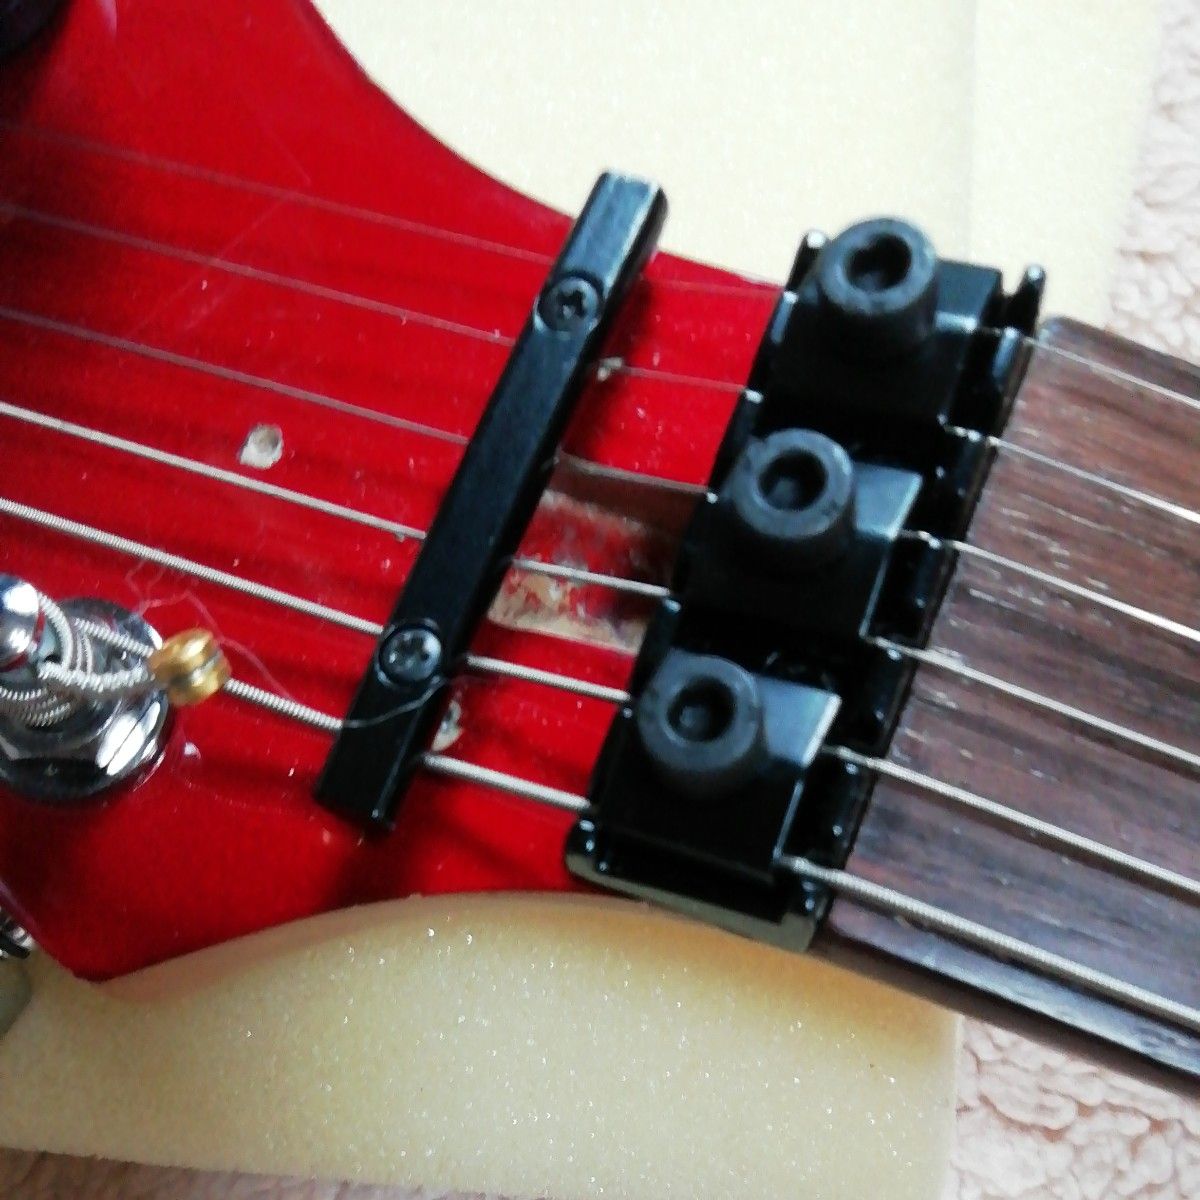 狂気な美品 Aria ProⅡ Stratocaster MA改造品フロイドローズタイプ エレキギター 致命傷あり